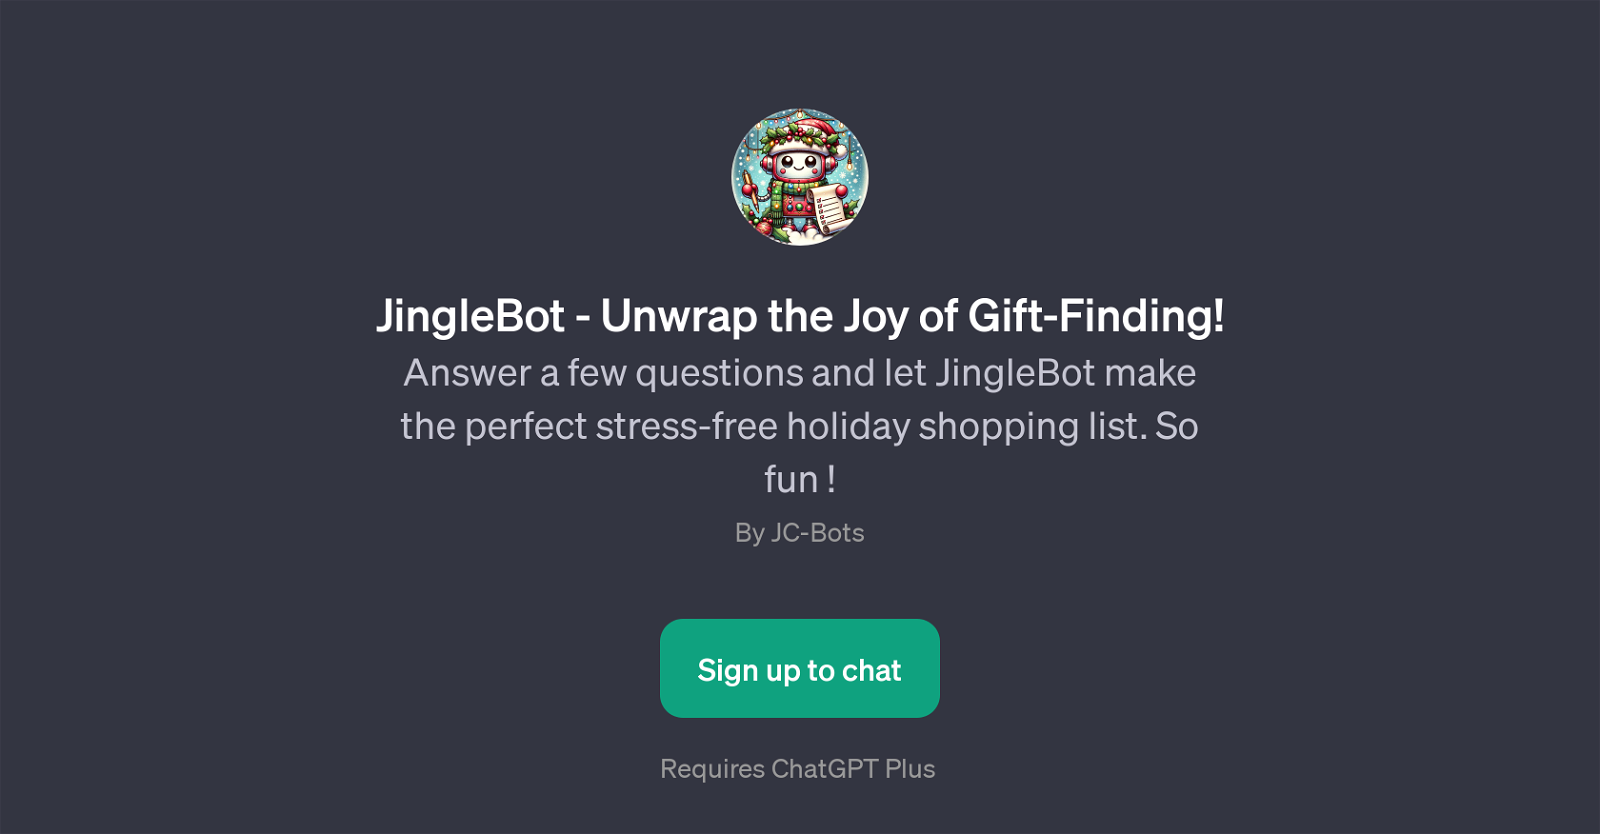 JingleBot website